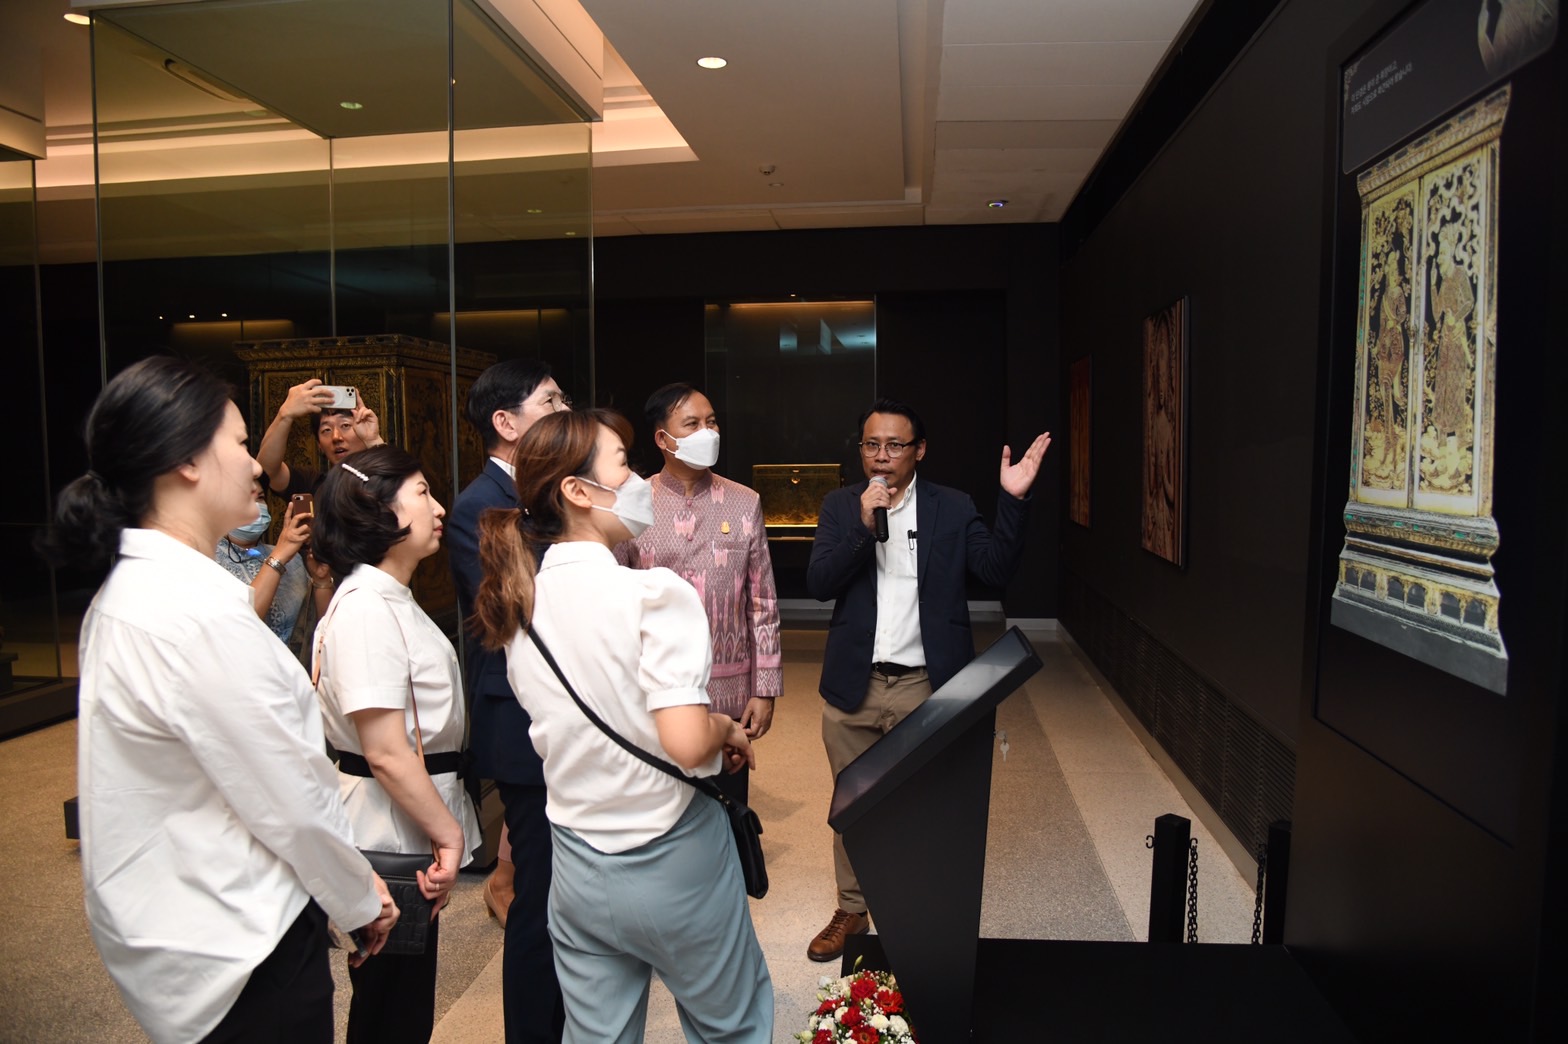 กรมศิลปากรจับมือหน่วยงานภาครัฐและเอกชนจากสาธารณรัฐเกาหลี  พัฒนาสื่อจัดแสดงดิจิทัลในพิพิธภัณฑสถานแห่งชาติ พระนคร